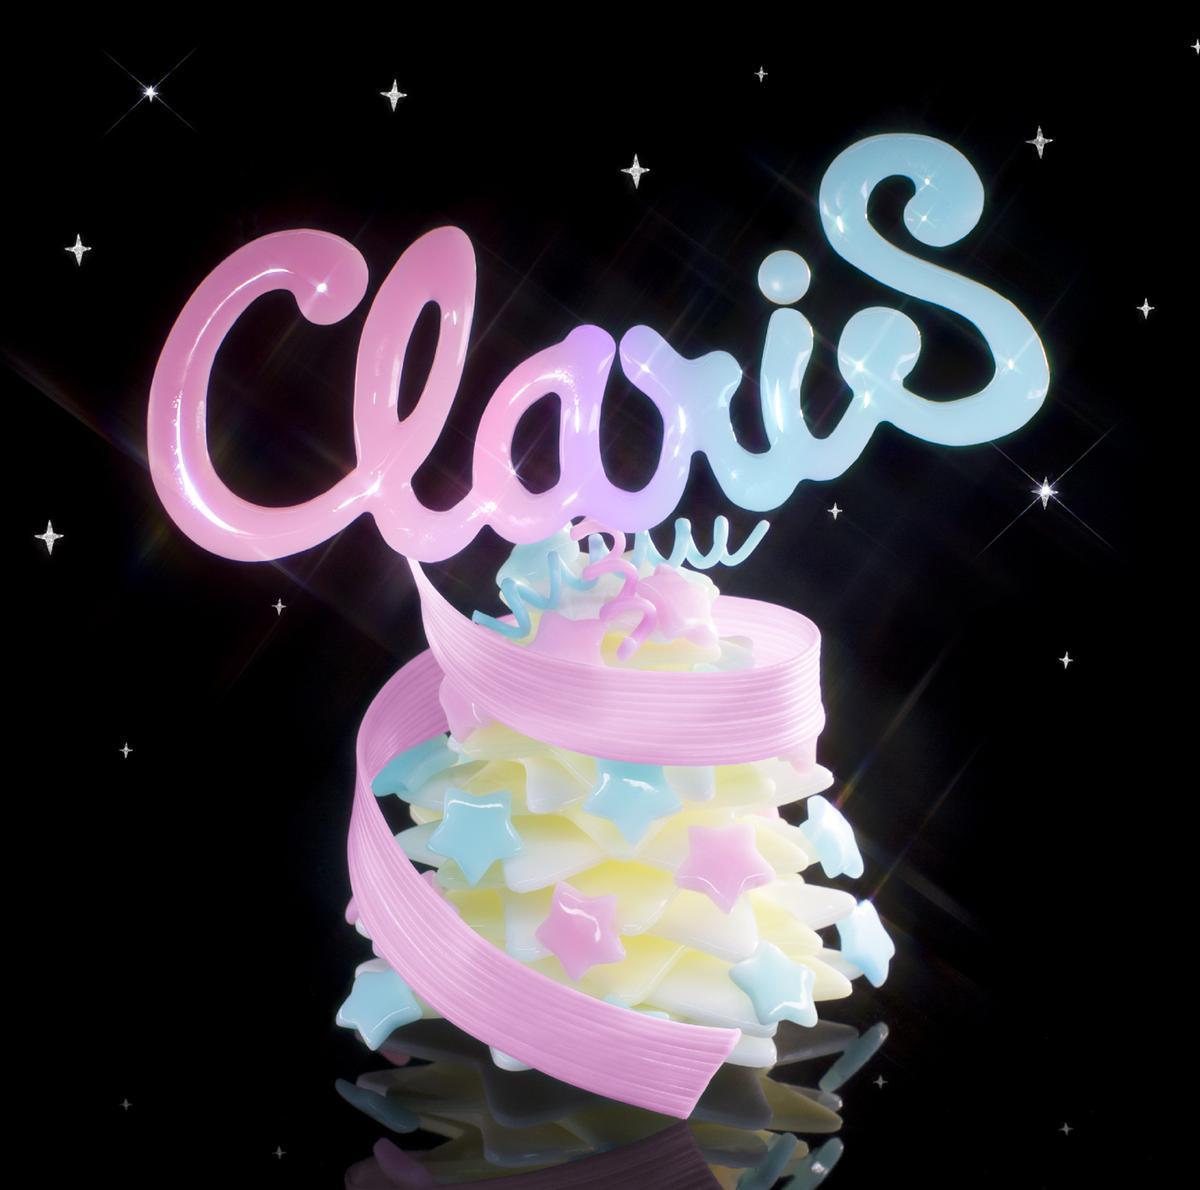 ClariS (クラリス) 6thシングル『ルミナス』(初回限定盤) 高画質ジャケット画像